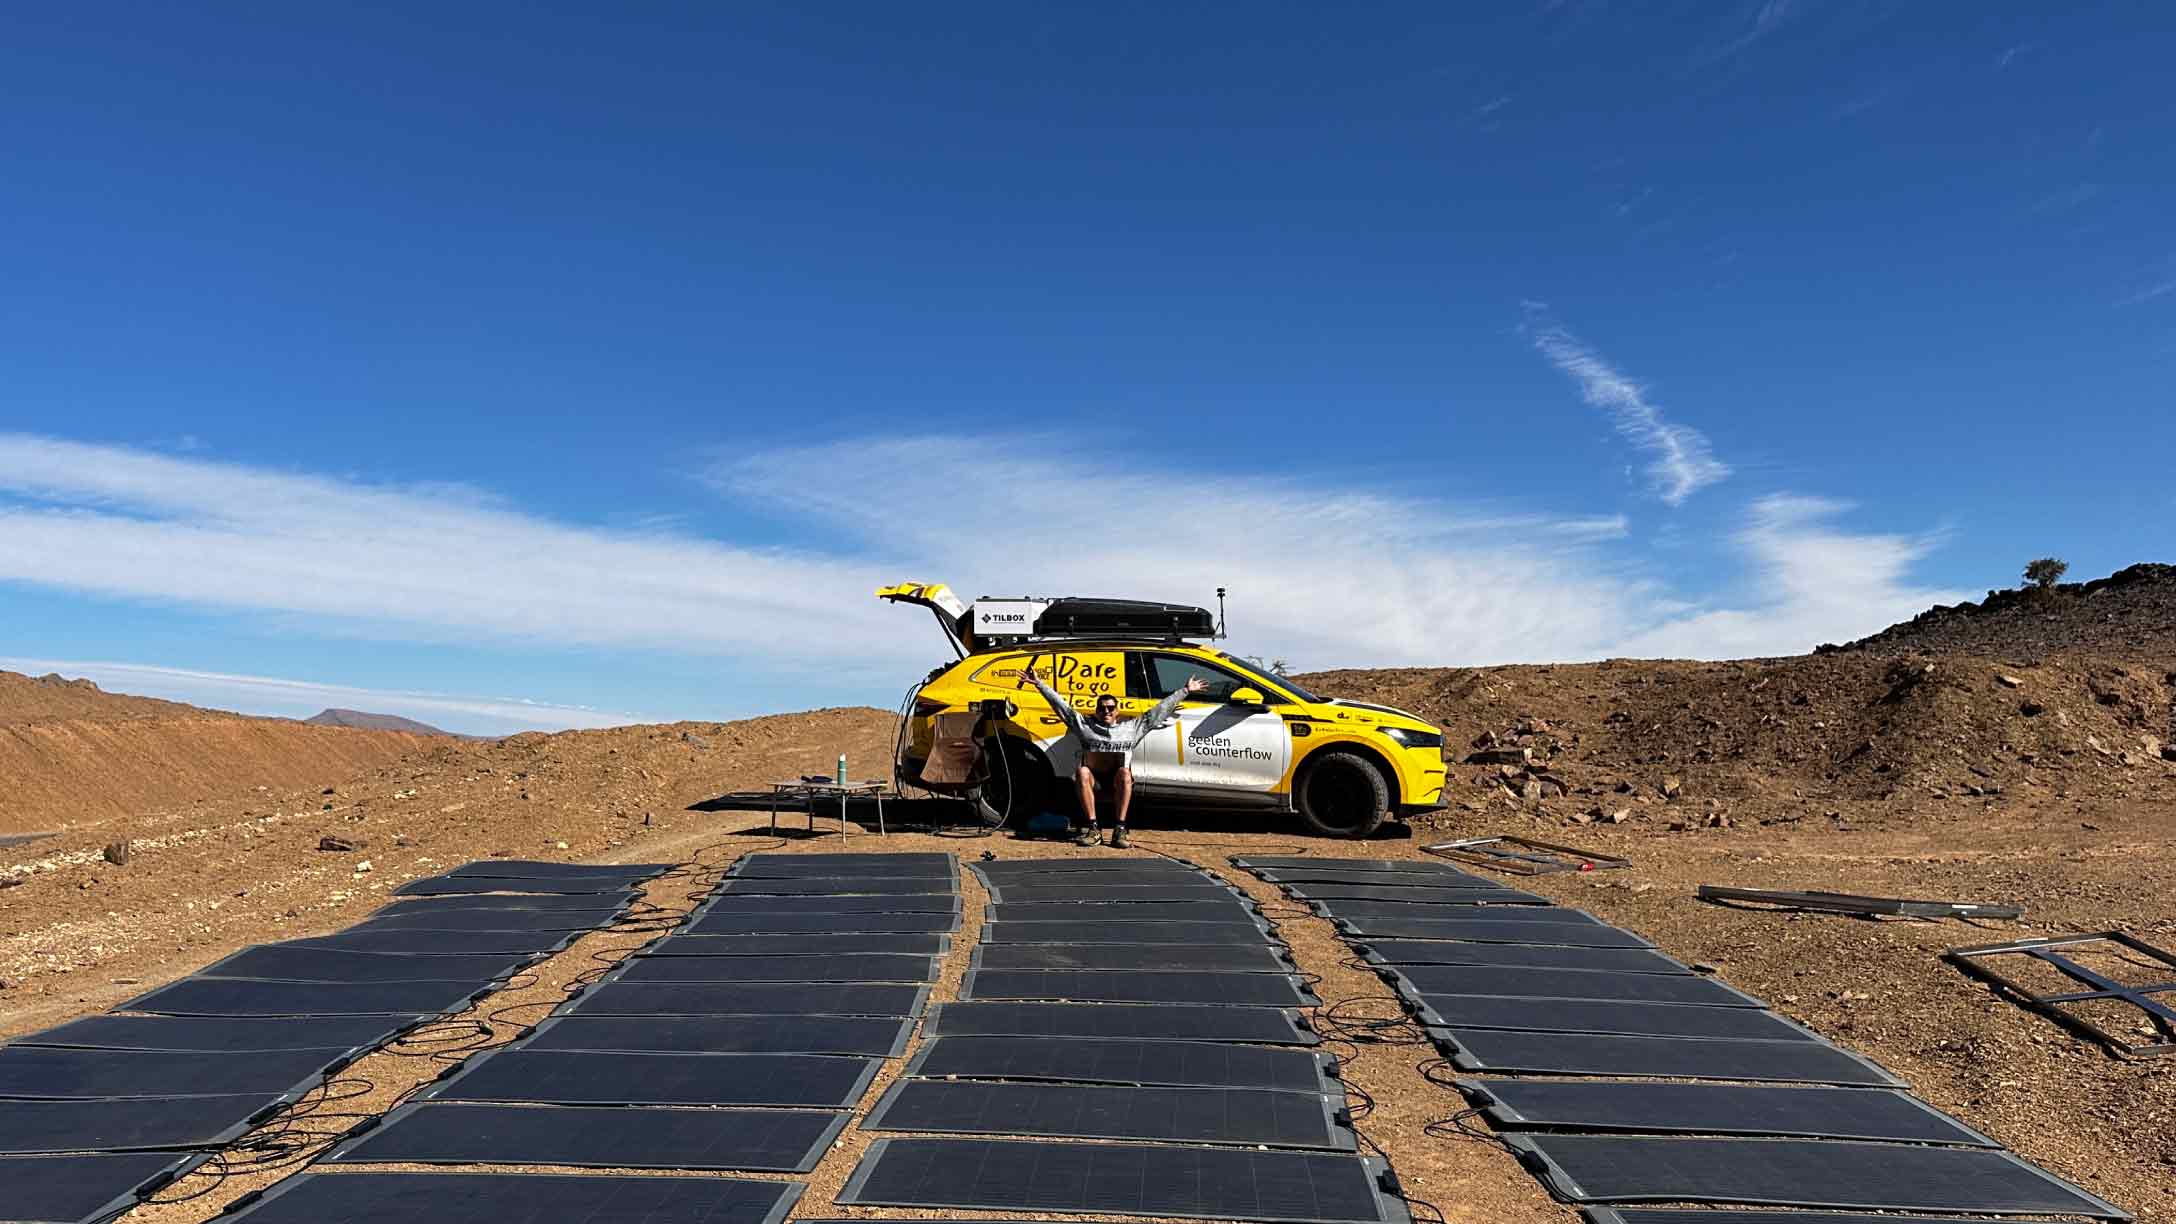 Het voertuig van 4x4electric laadt de auto op met zonnepanelen in de zon